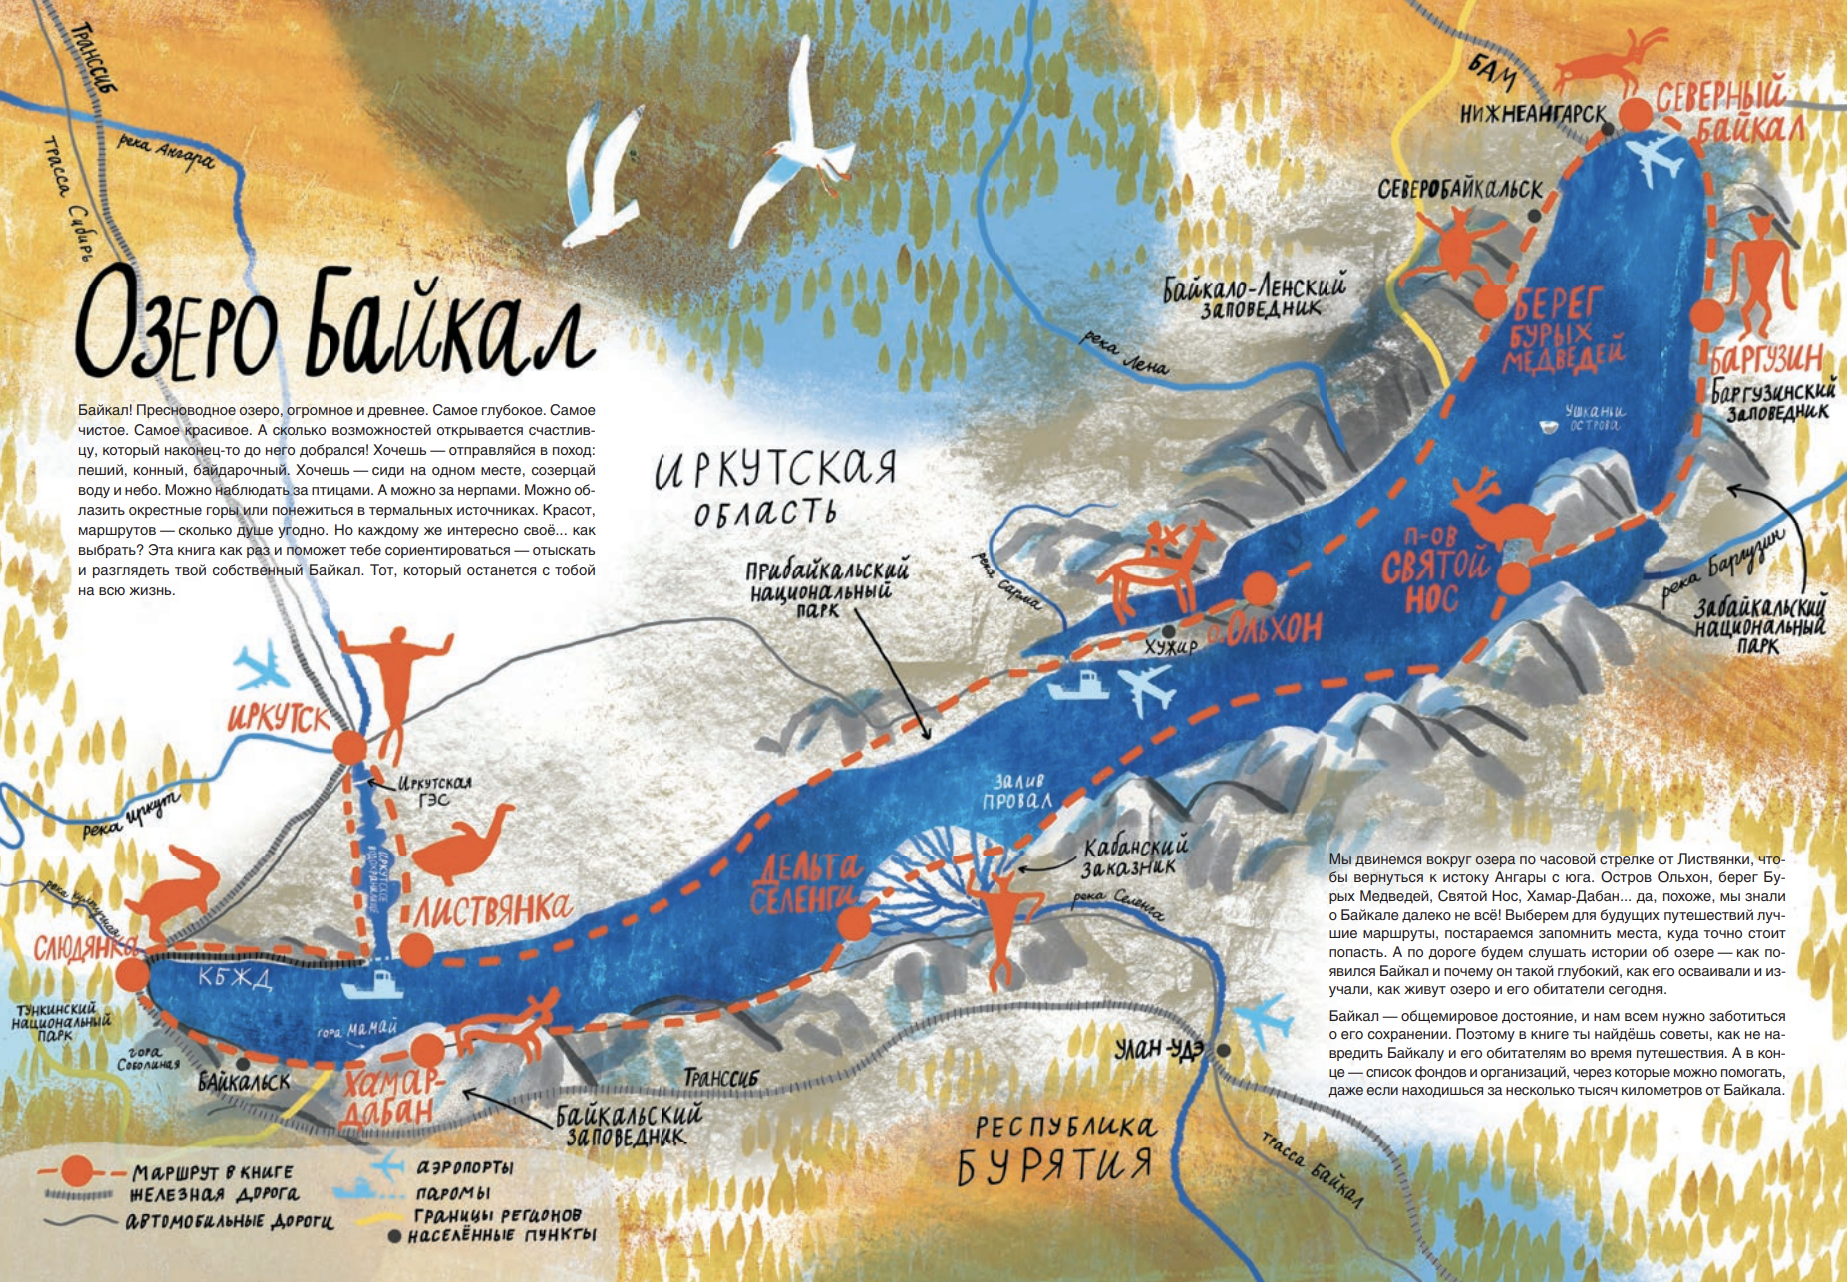 Книга дня: иллюстрированное путешествие по Байкалу